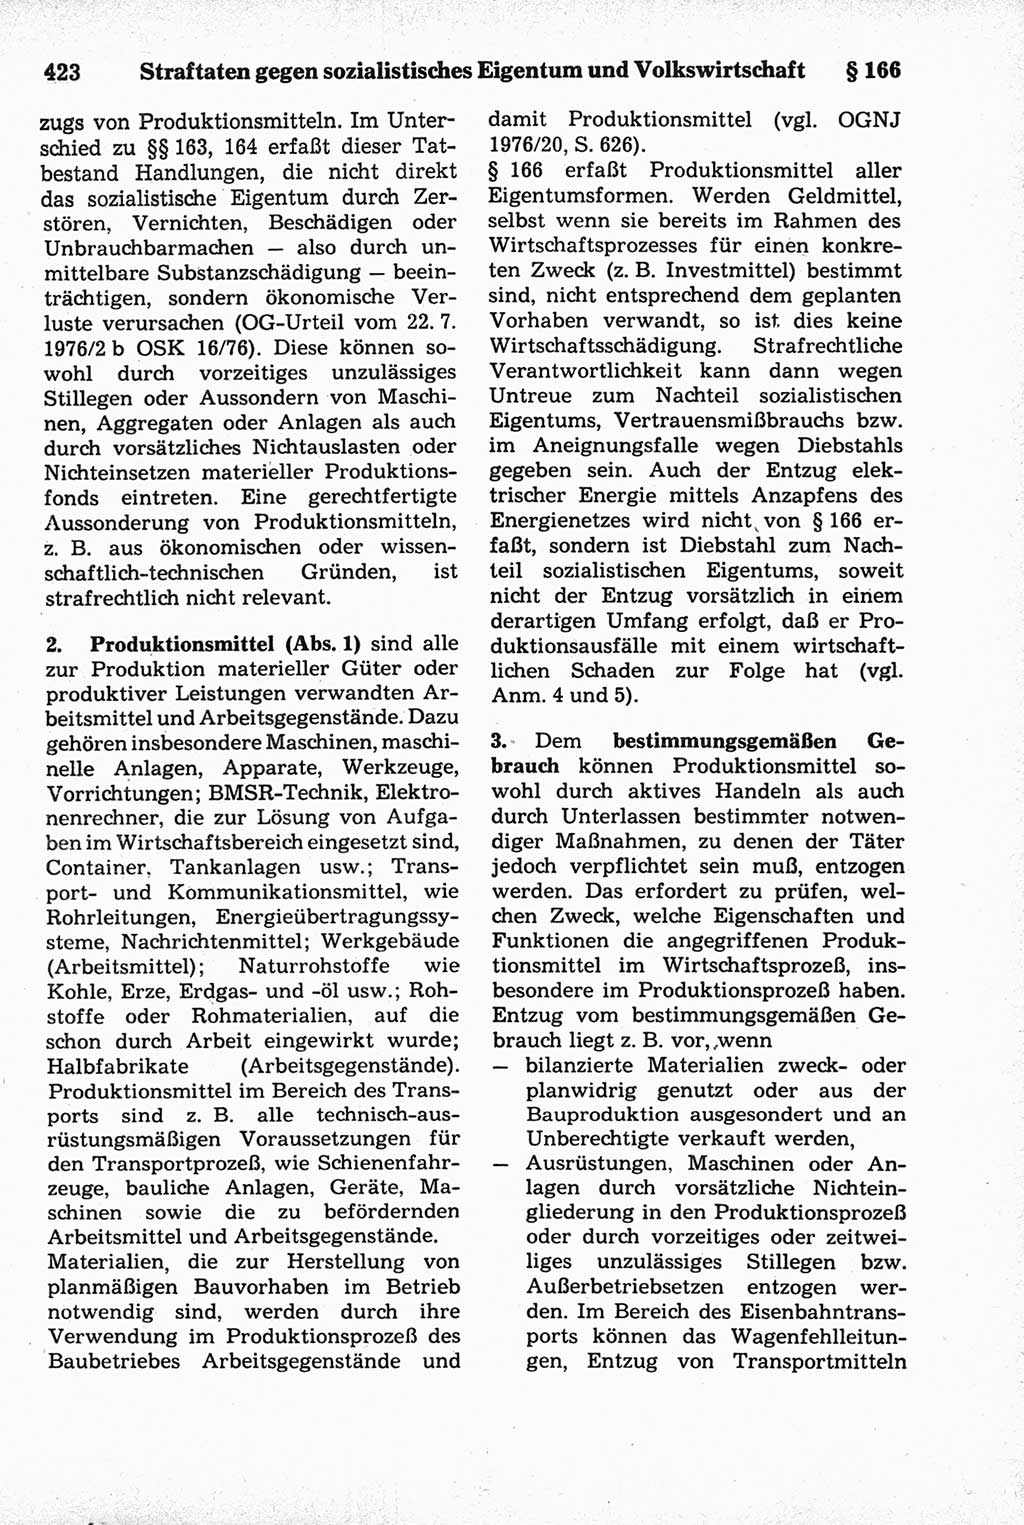 Strafrecht der Deutschen Demokratischen Republik (DDR), Kommentar zum Strafgesetzbuch (StGB) 1981, Seite 423 (Strafr. DDR Komm. StGB 1981, S. 423)